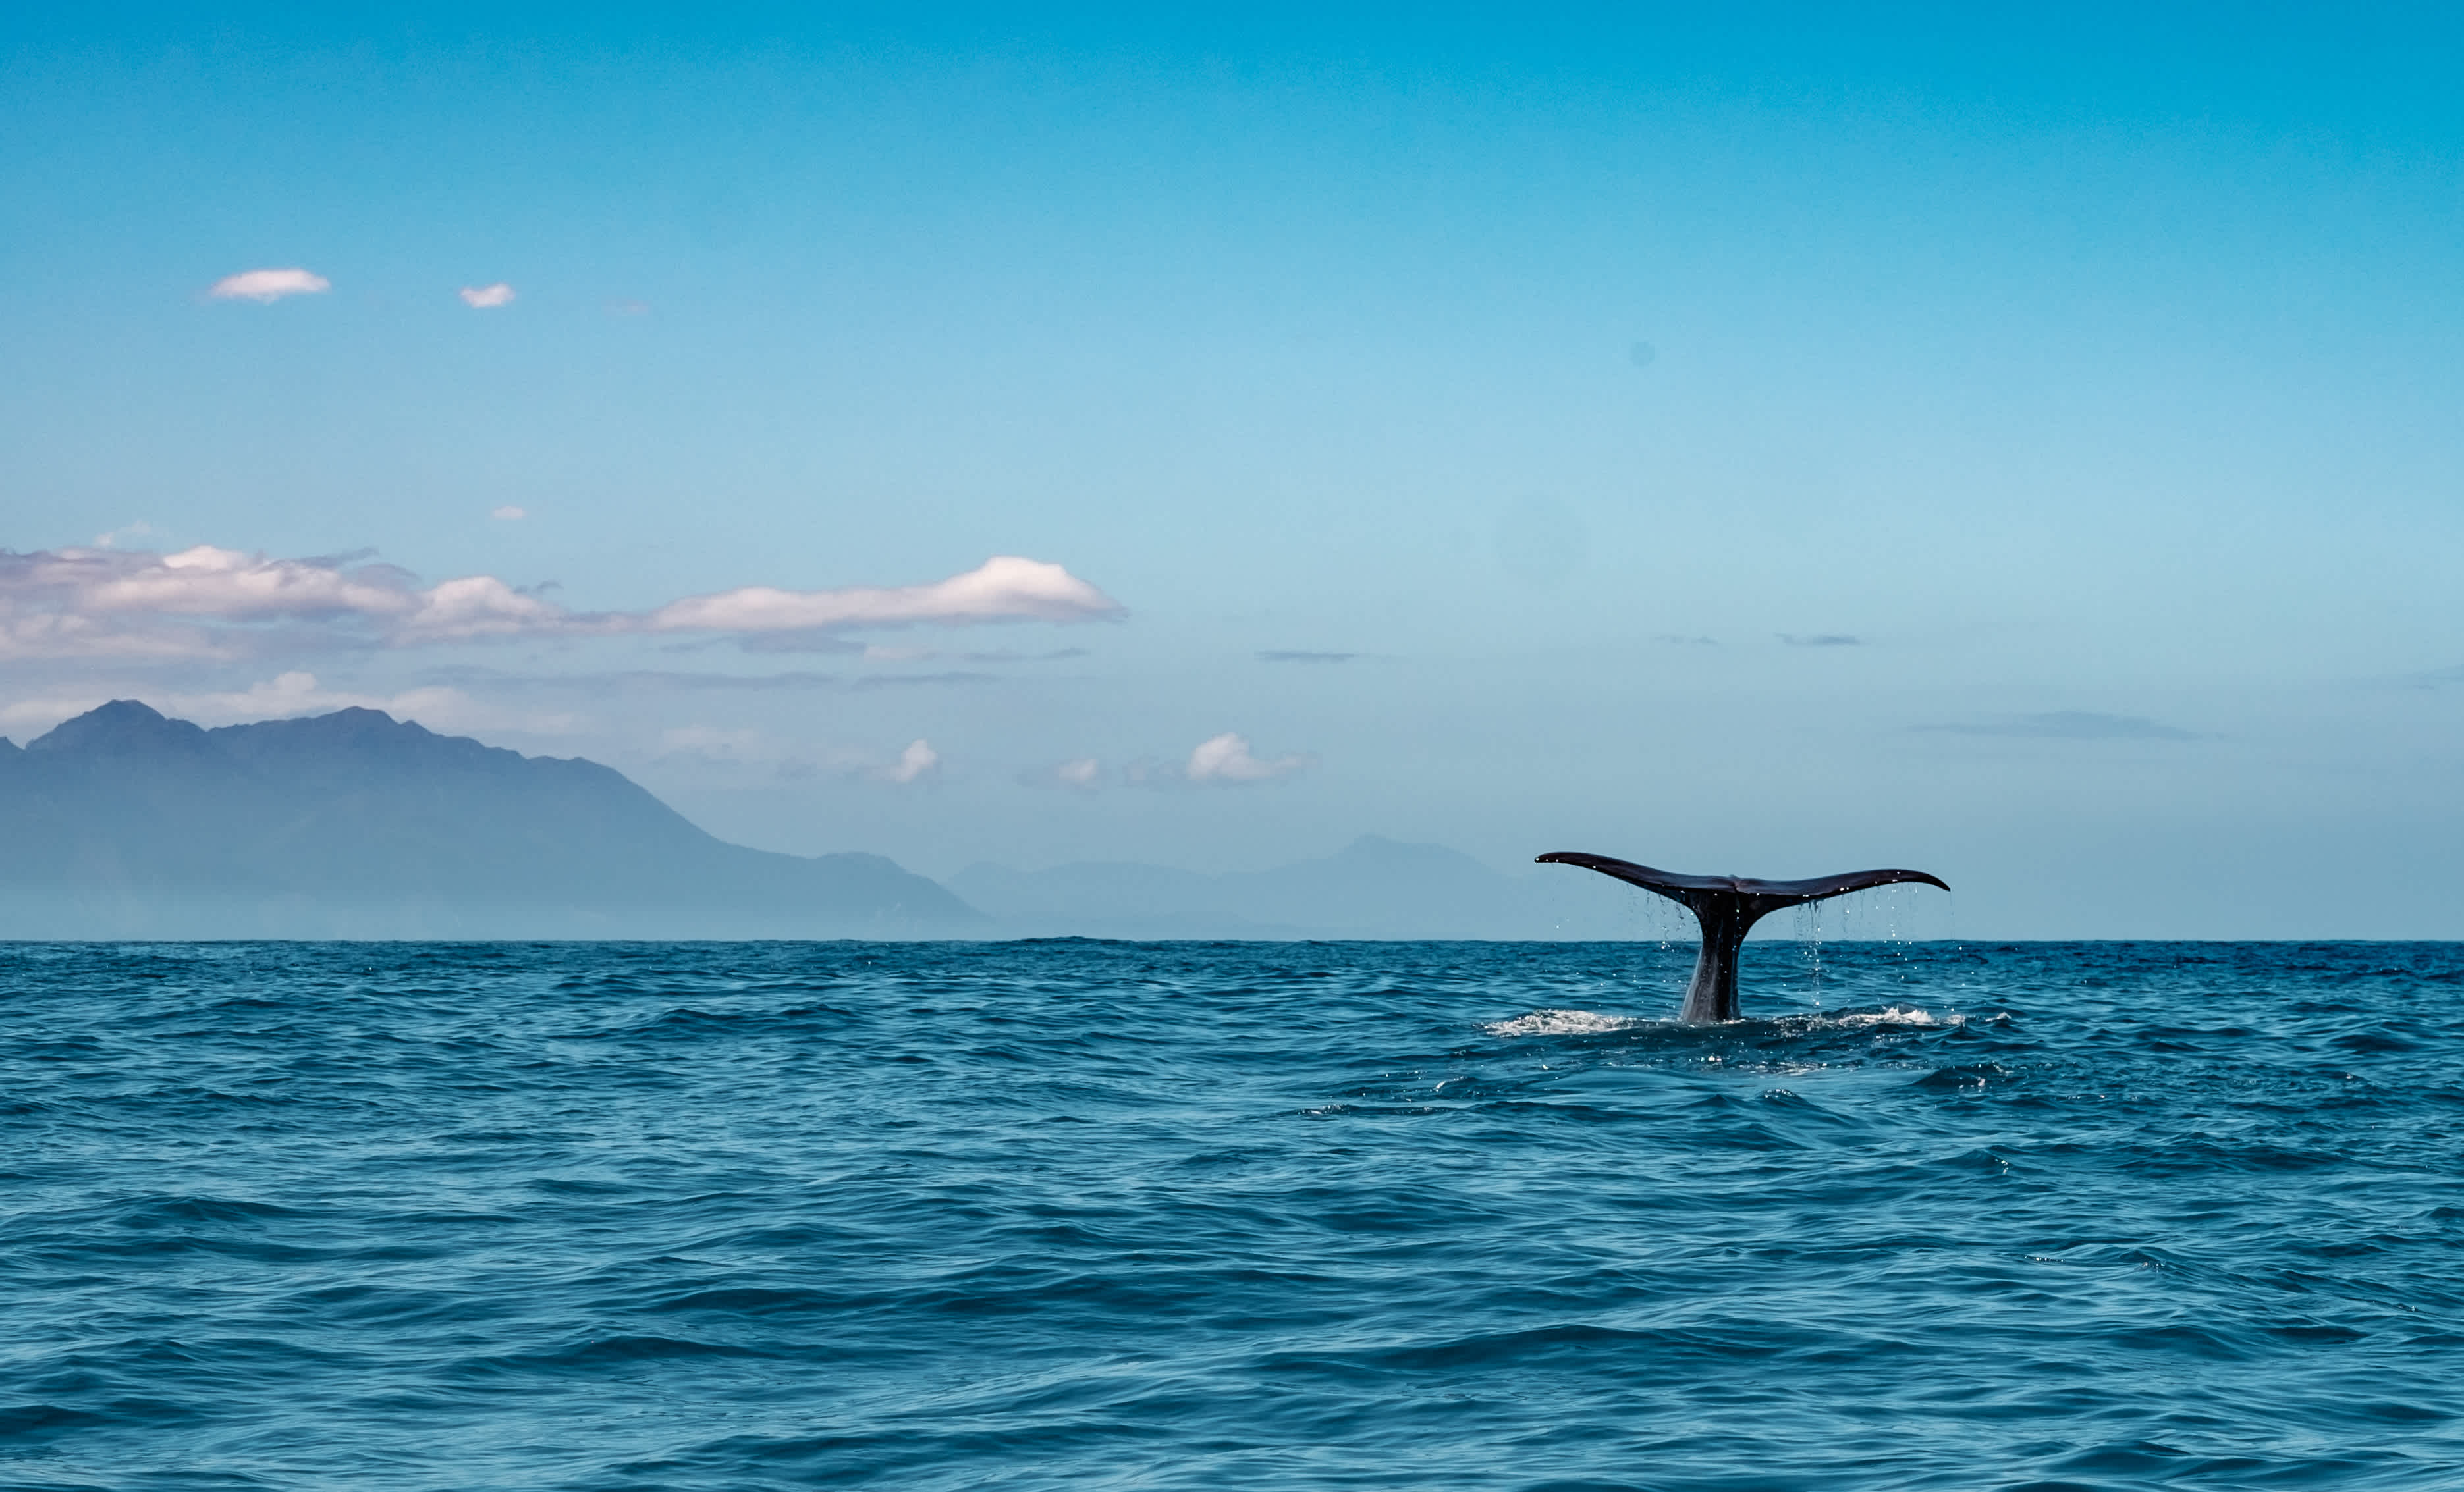 Queue d'une baleine dans l'eau, Kaikoura, Nouvelle-Zélande.

